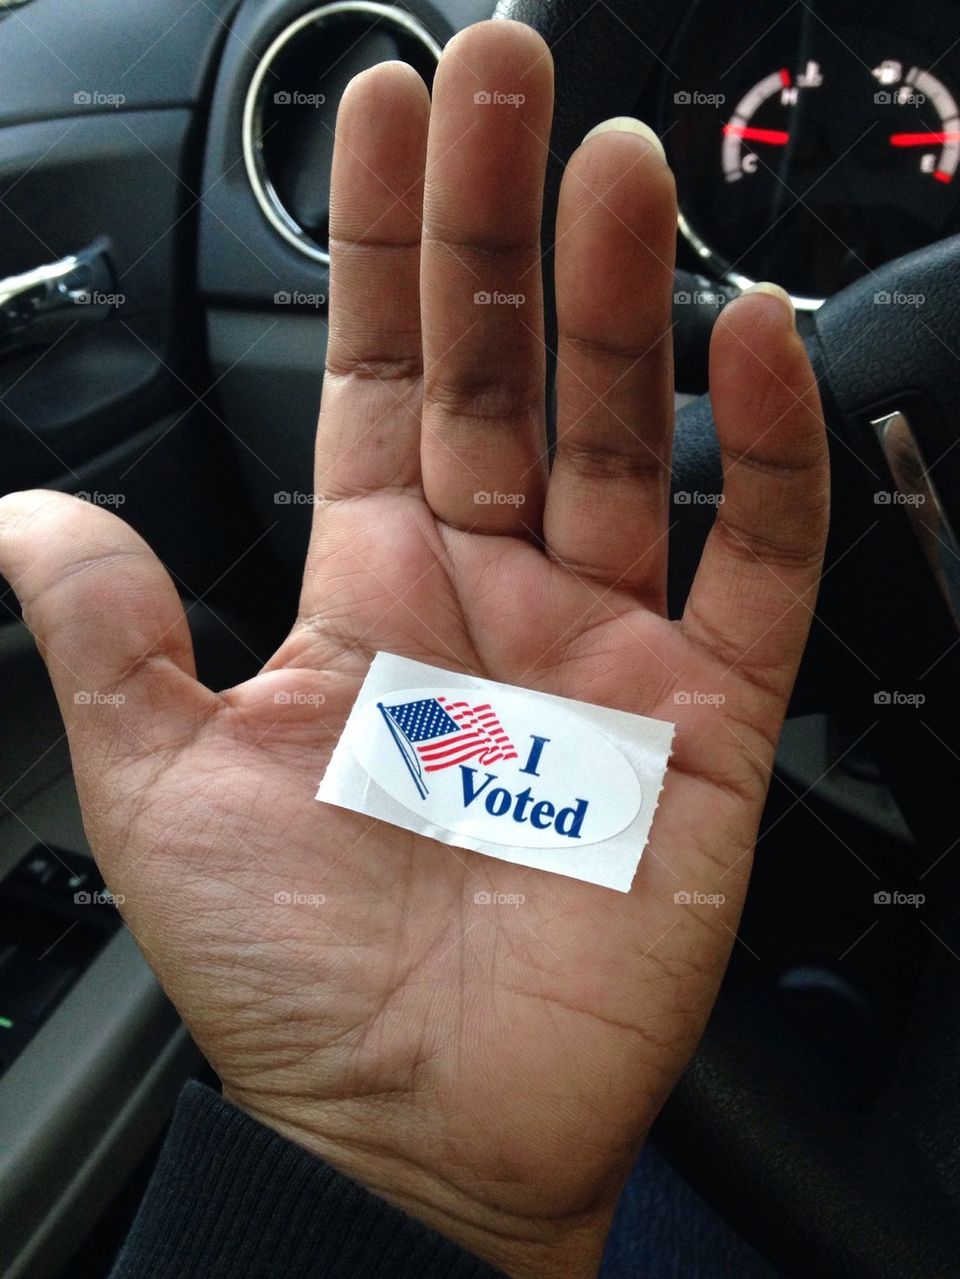 I Voted